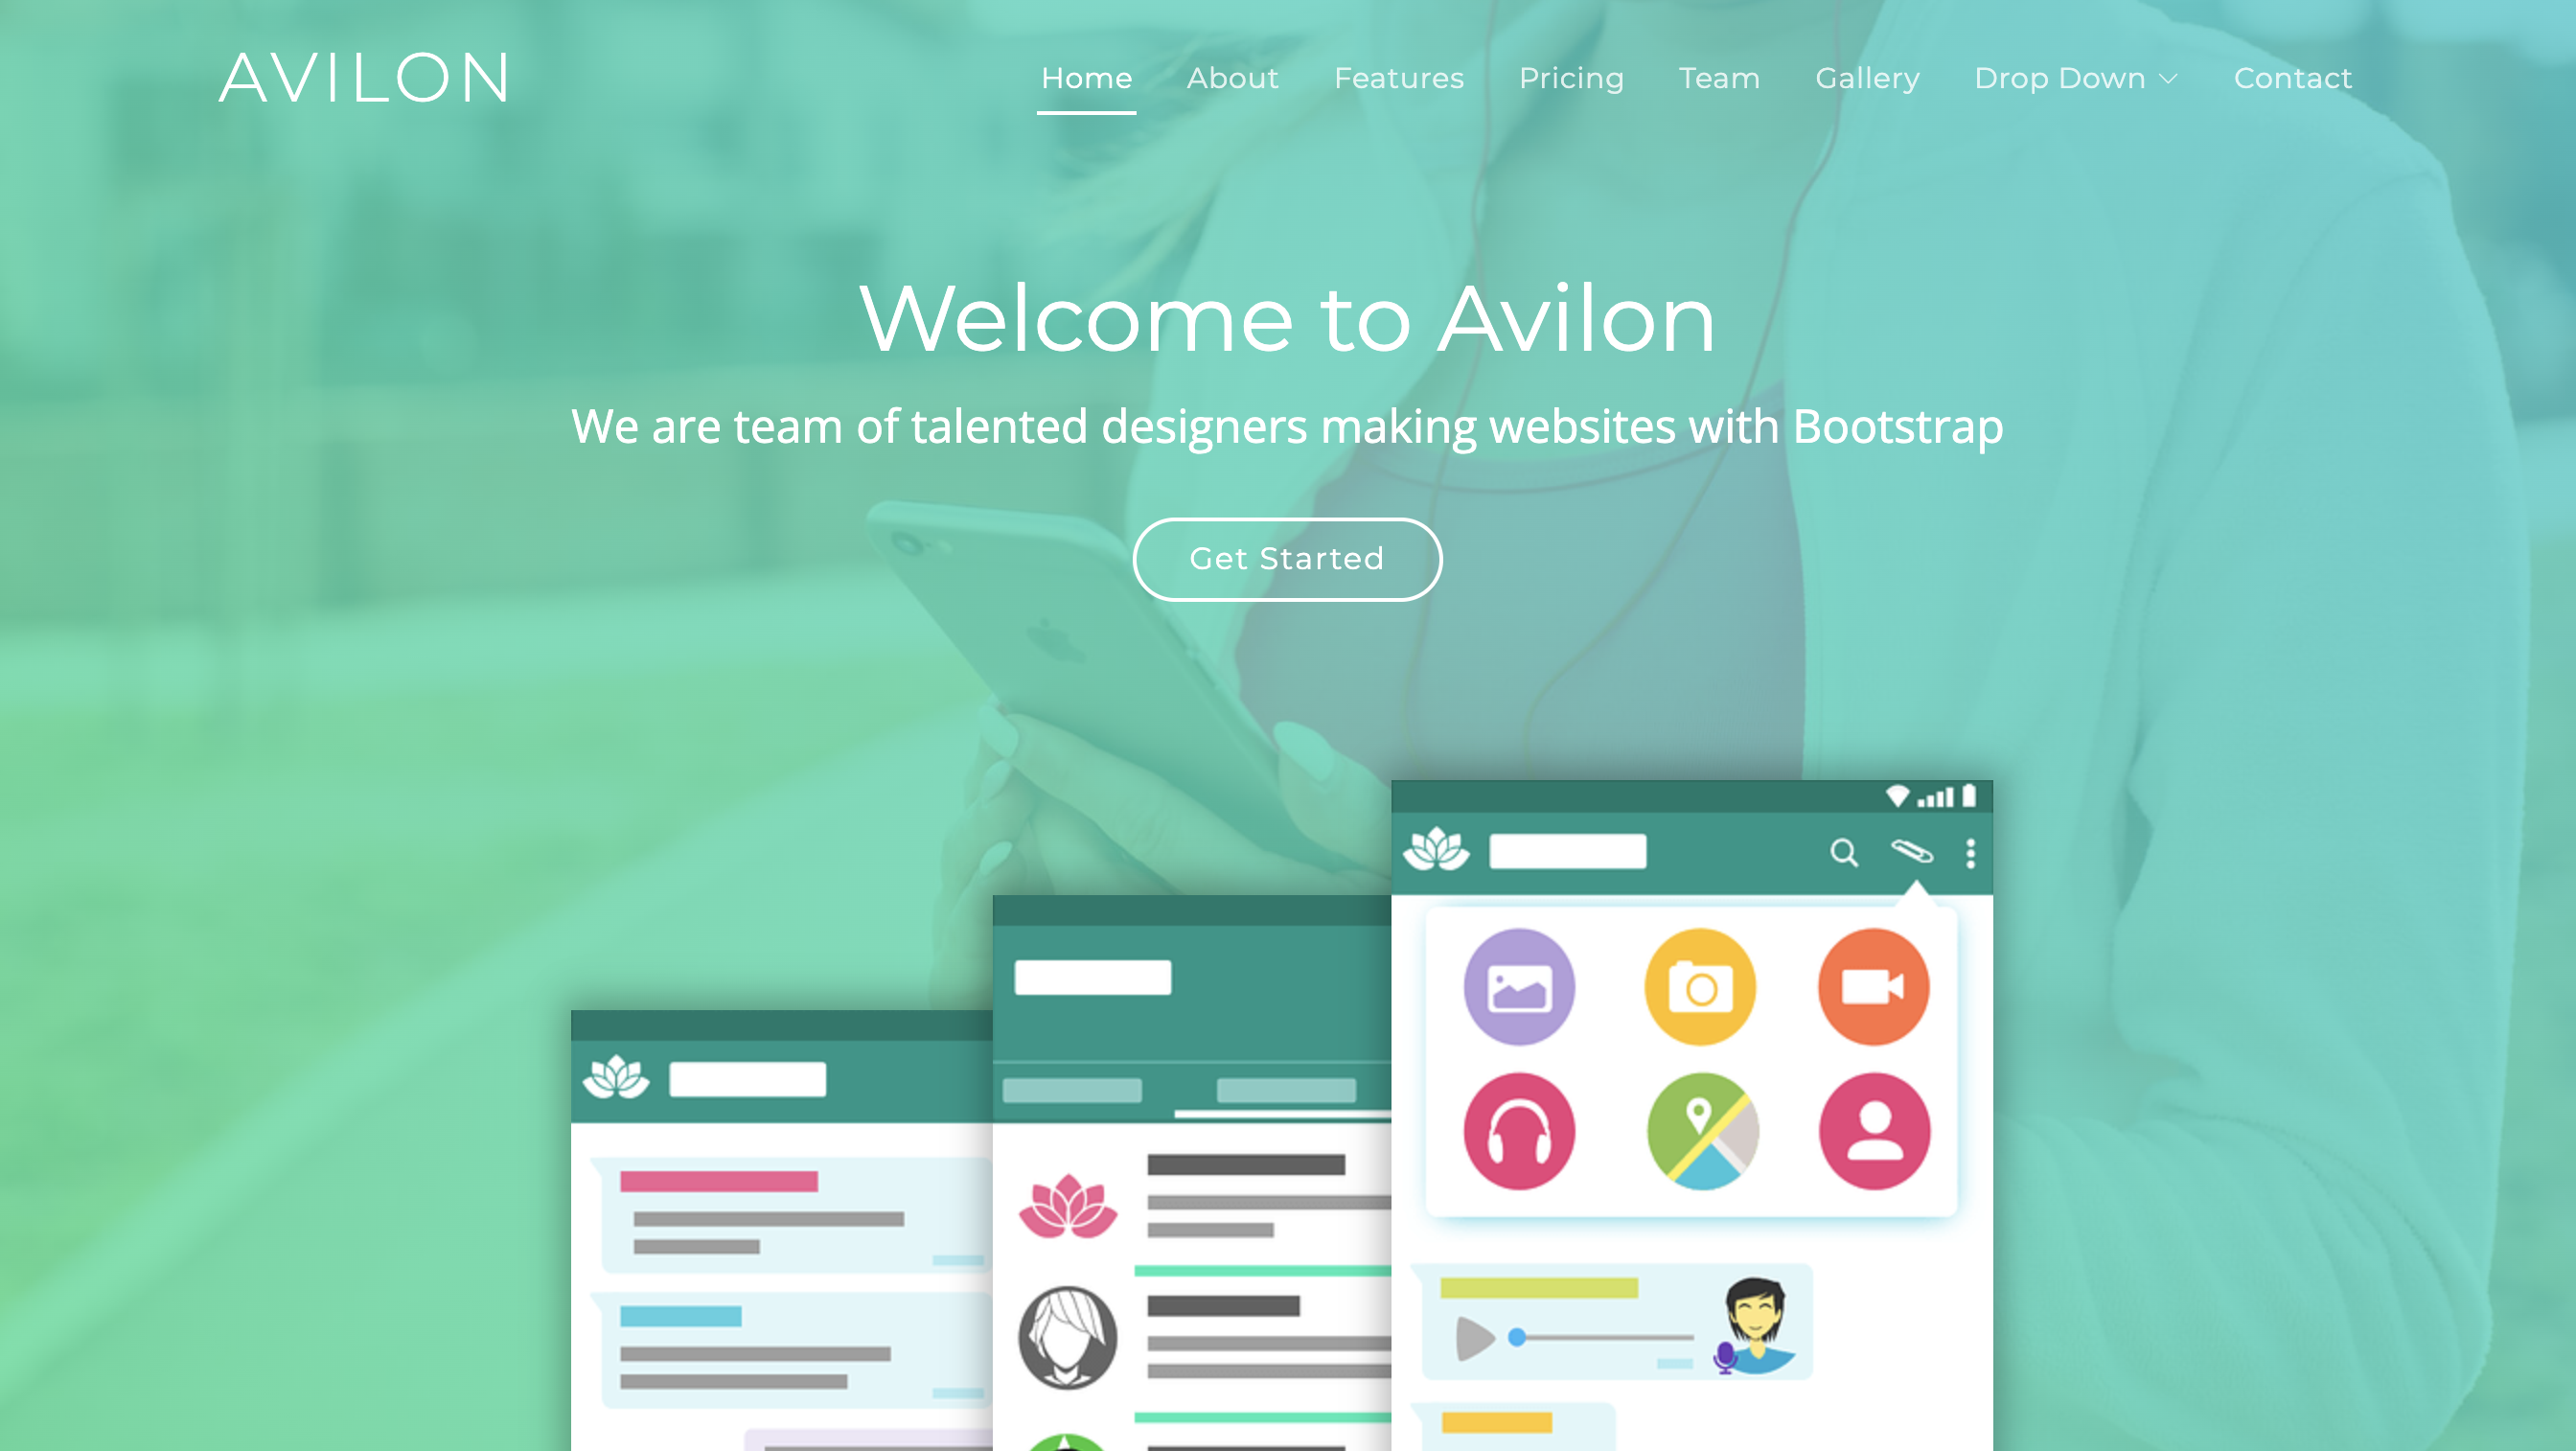 Avilon – A Simple Landing Page Template